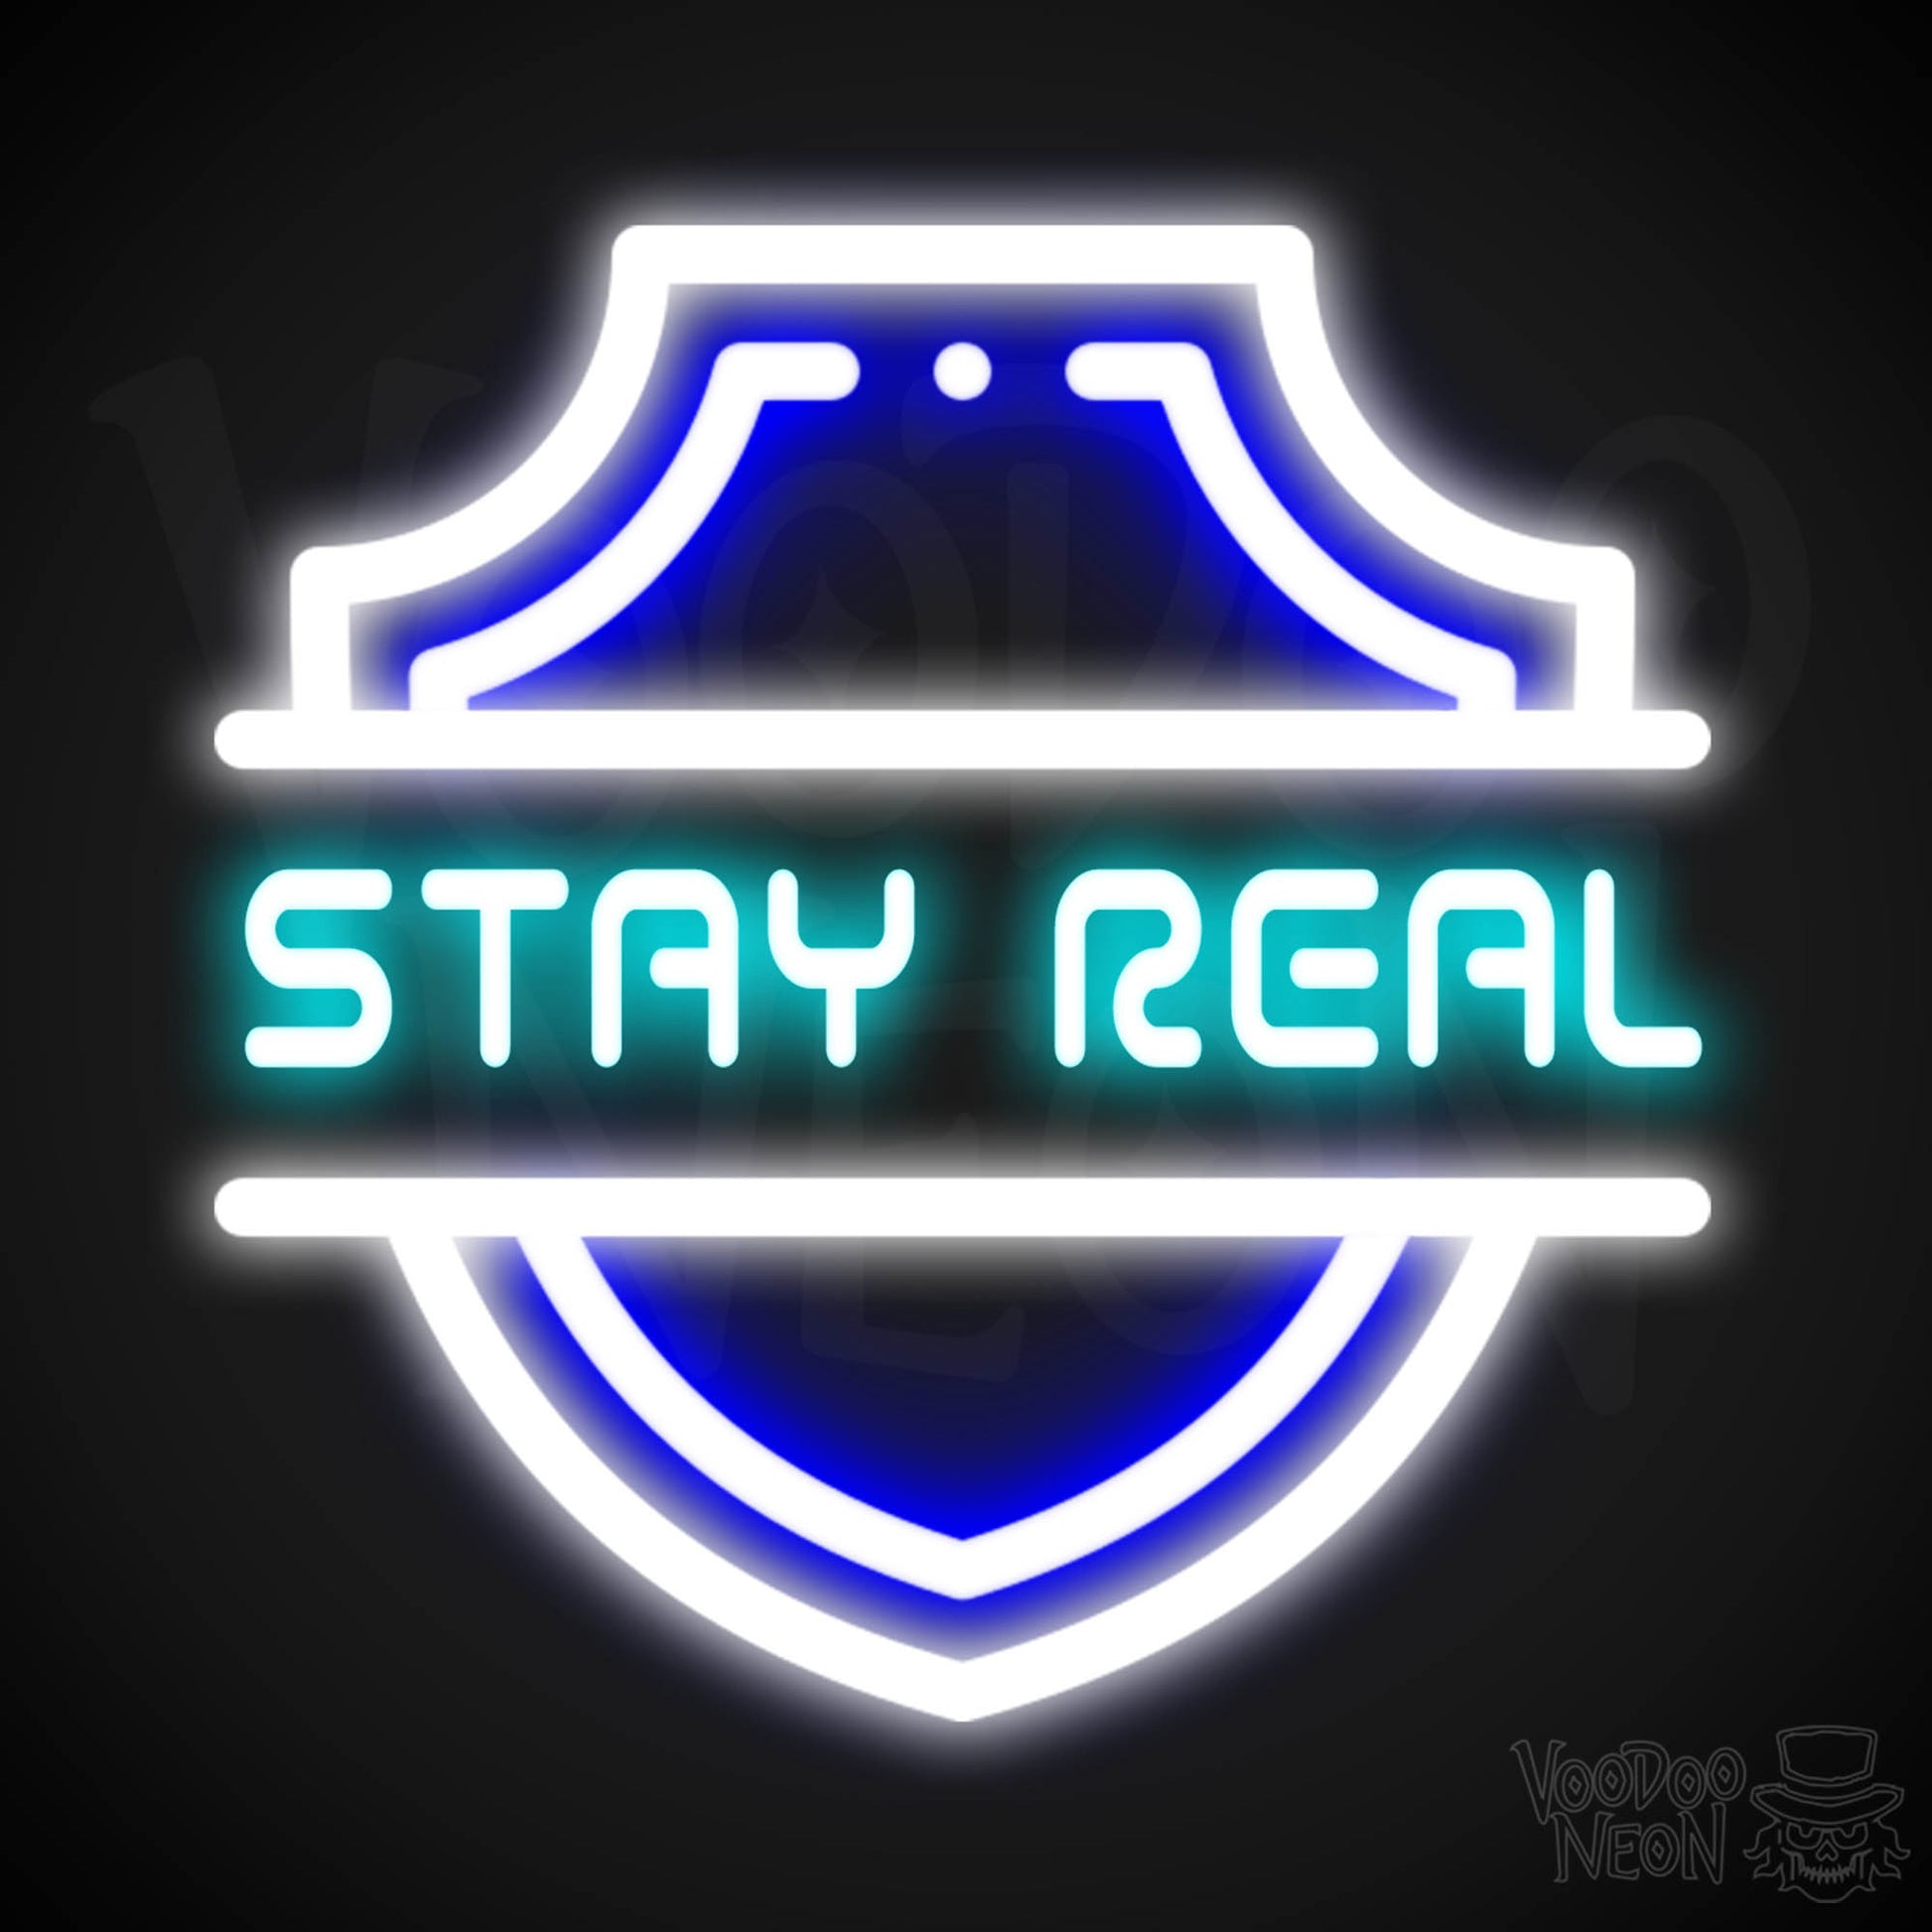 Stay Real Neon Sign - Neon Stay Real Sign - Neon Wall Art - Color Multi-Color